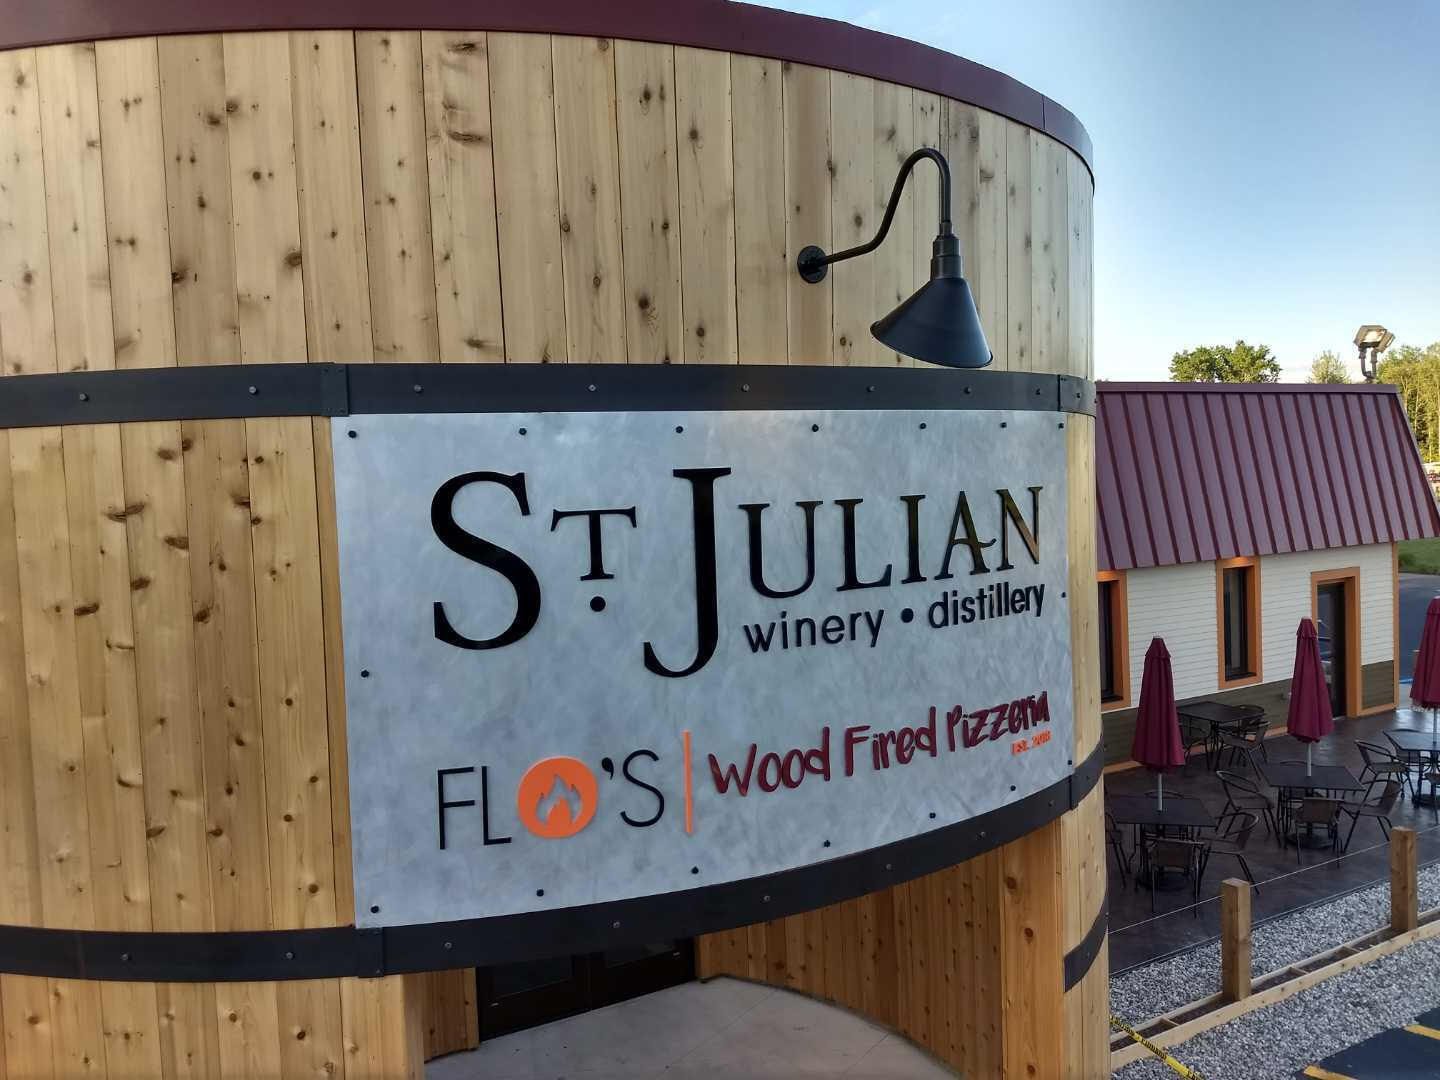 St. Julian - Winery, Distilllery